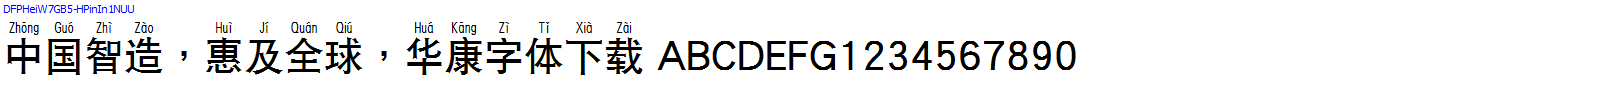 華康字體DFPHeiW7GB5-HPinIn1NUU.TTF